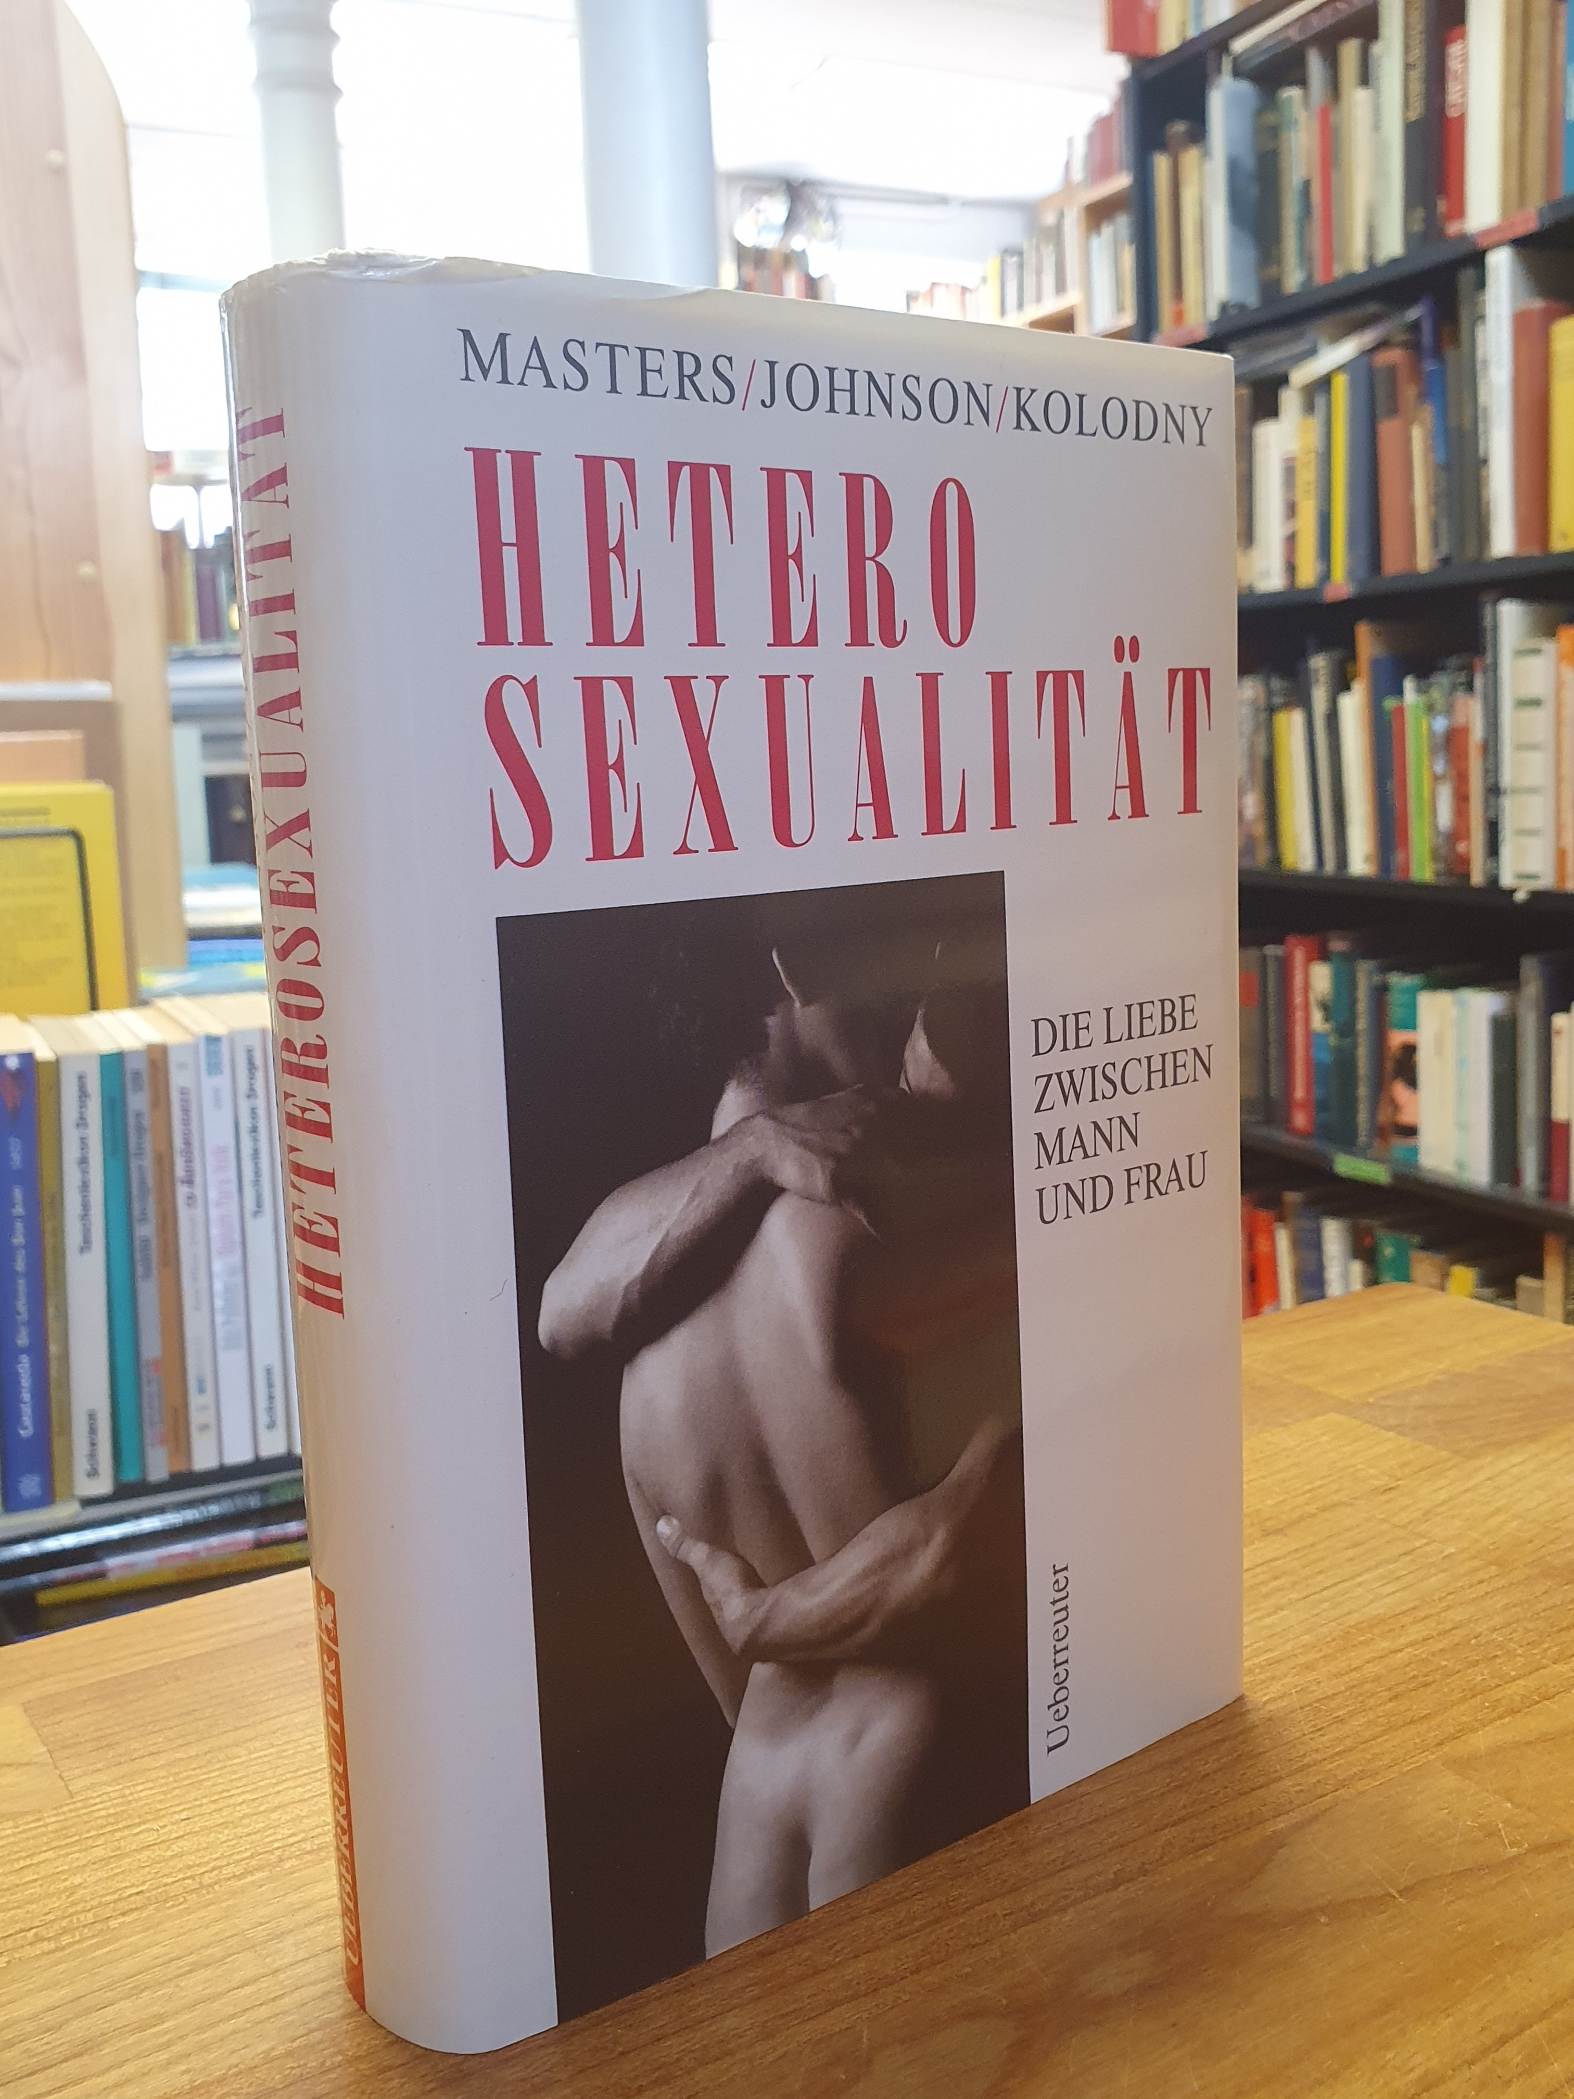 Masters, Heterosexualität – Die Liebe zwischen Mann und Frau,